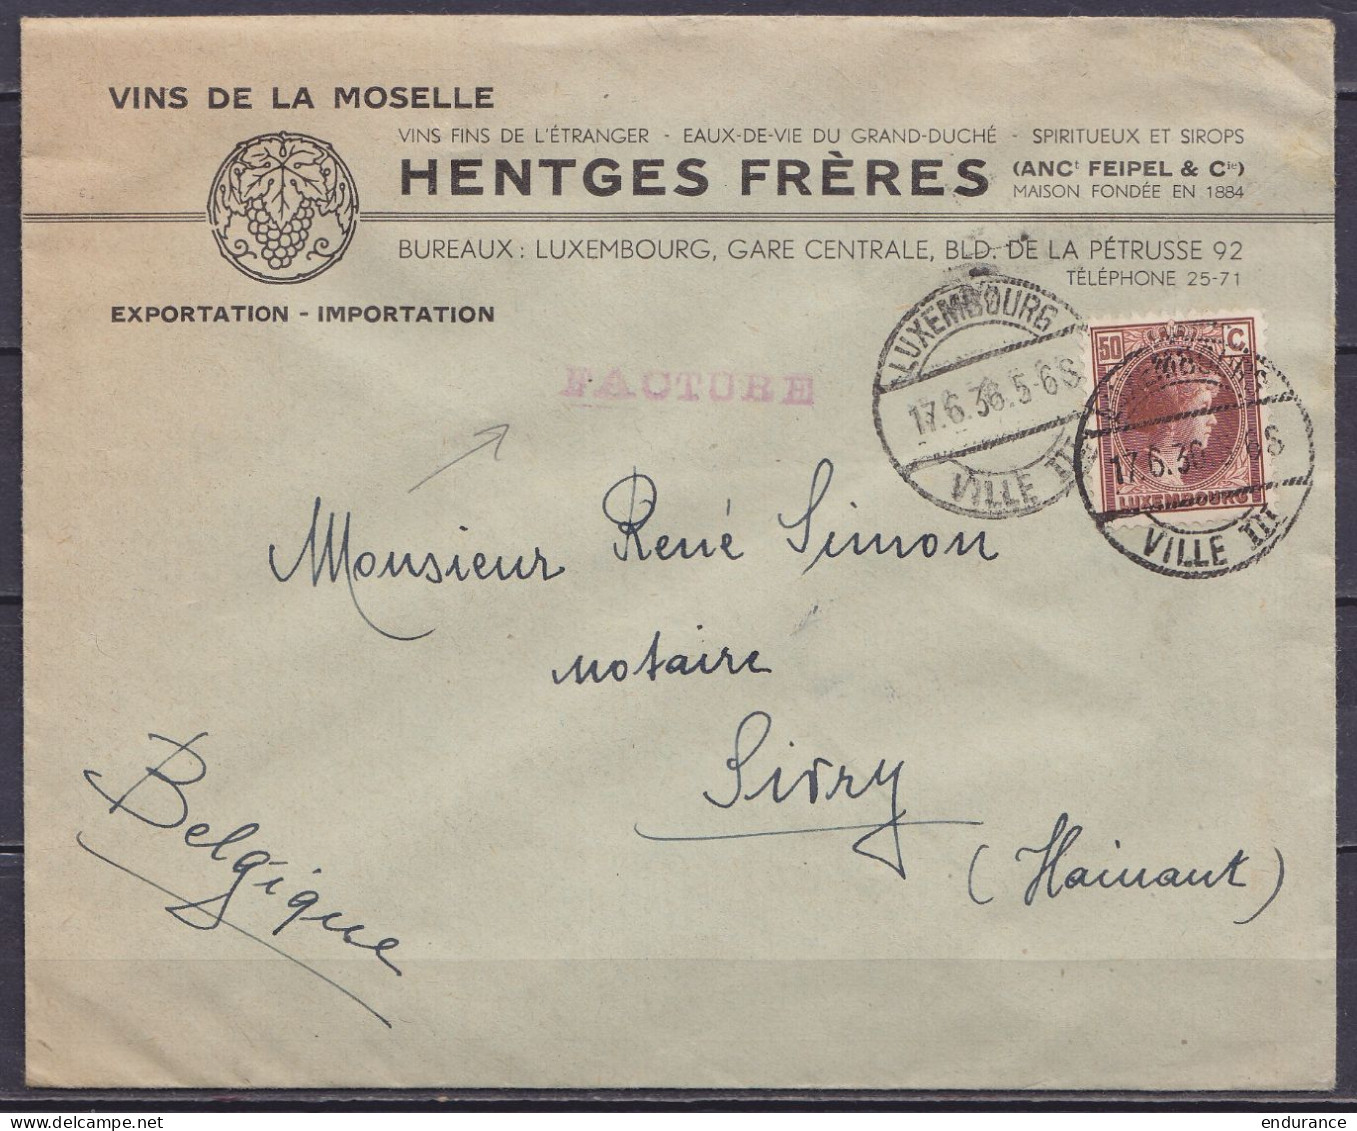 Luxembourg - L. Entête "Vins De La Moselle Hentges" Affr. 50c (tarif Facture) Càd "LUXEMBOURG /17.6.1936/ VILLE III" Pou - 1926-39 Charlotte Rechtsprofil